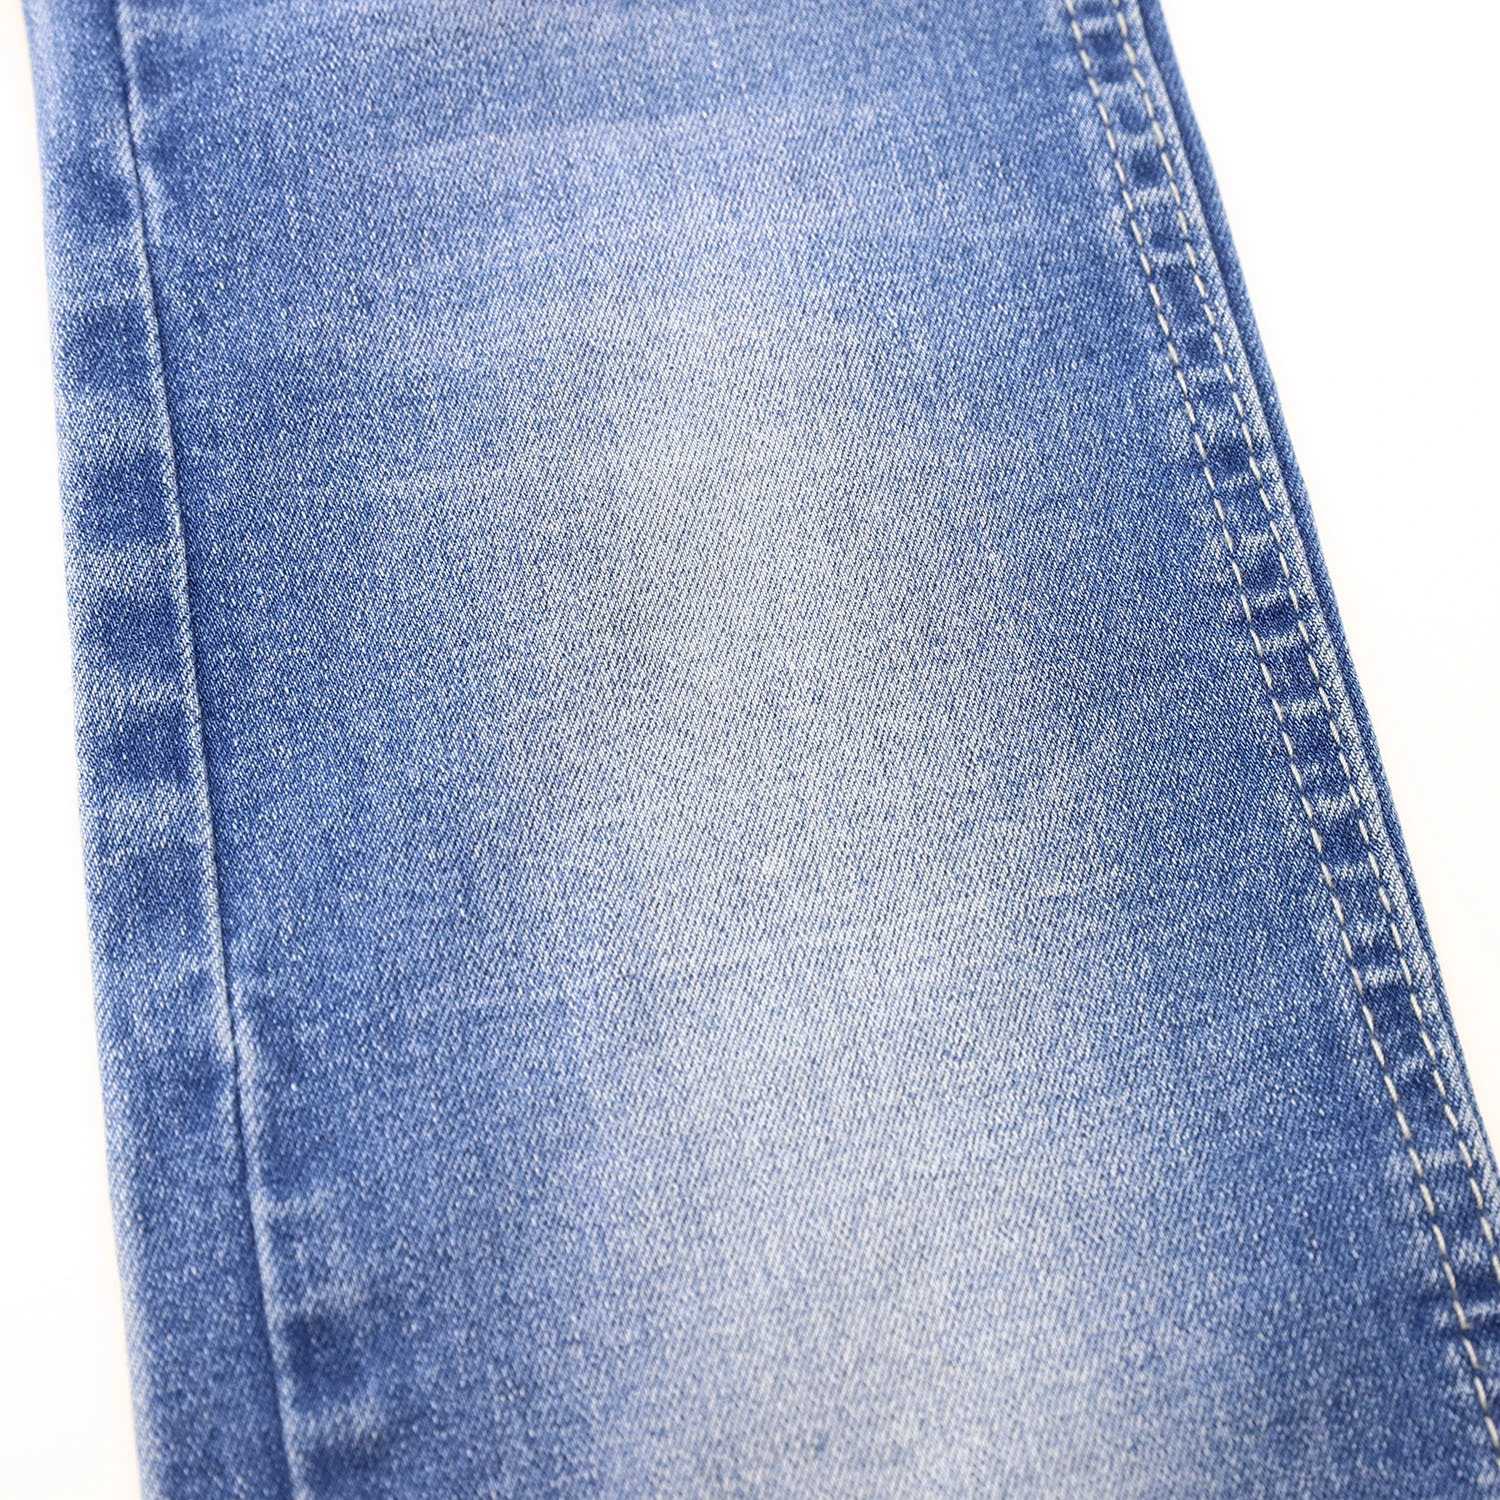 205F-3 10.4oz 10*21 Indigo Color High Stretch Cotton Denim Fabric for Jeans 5